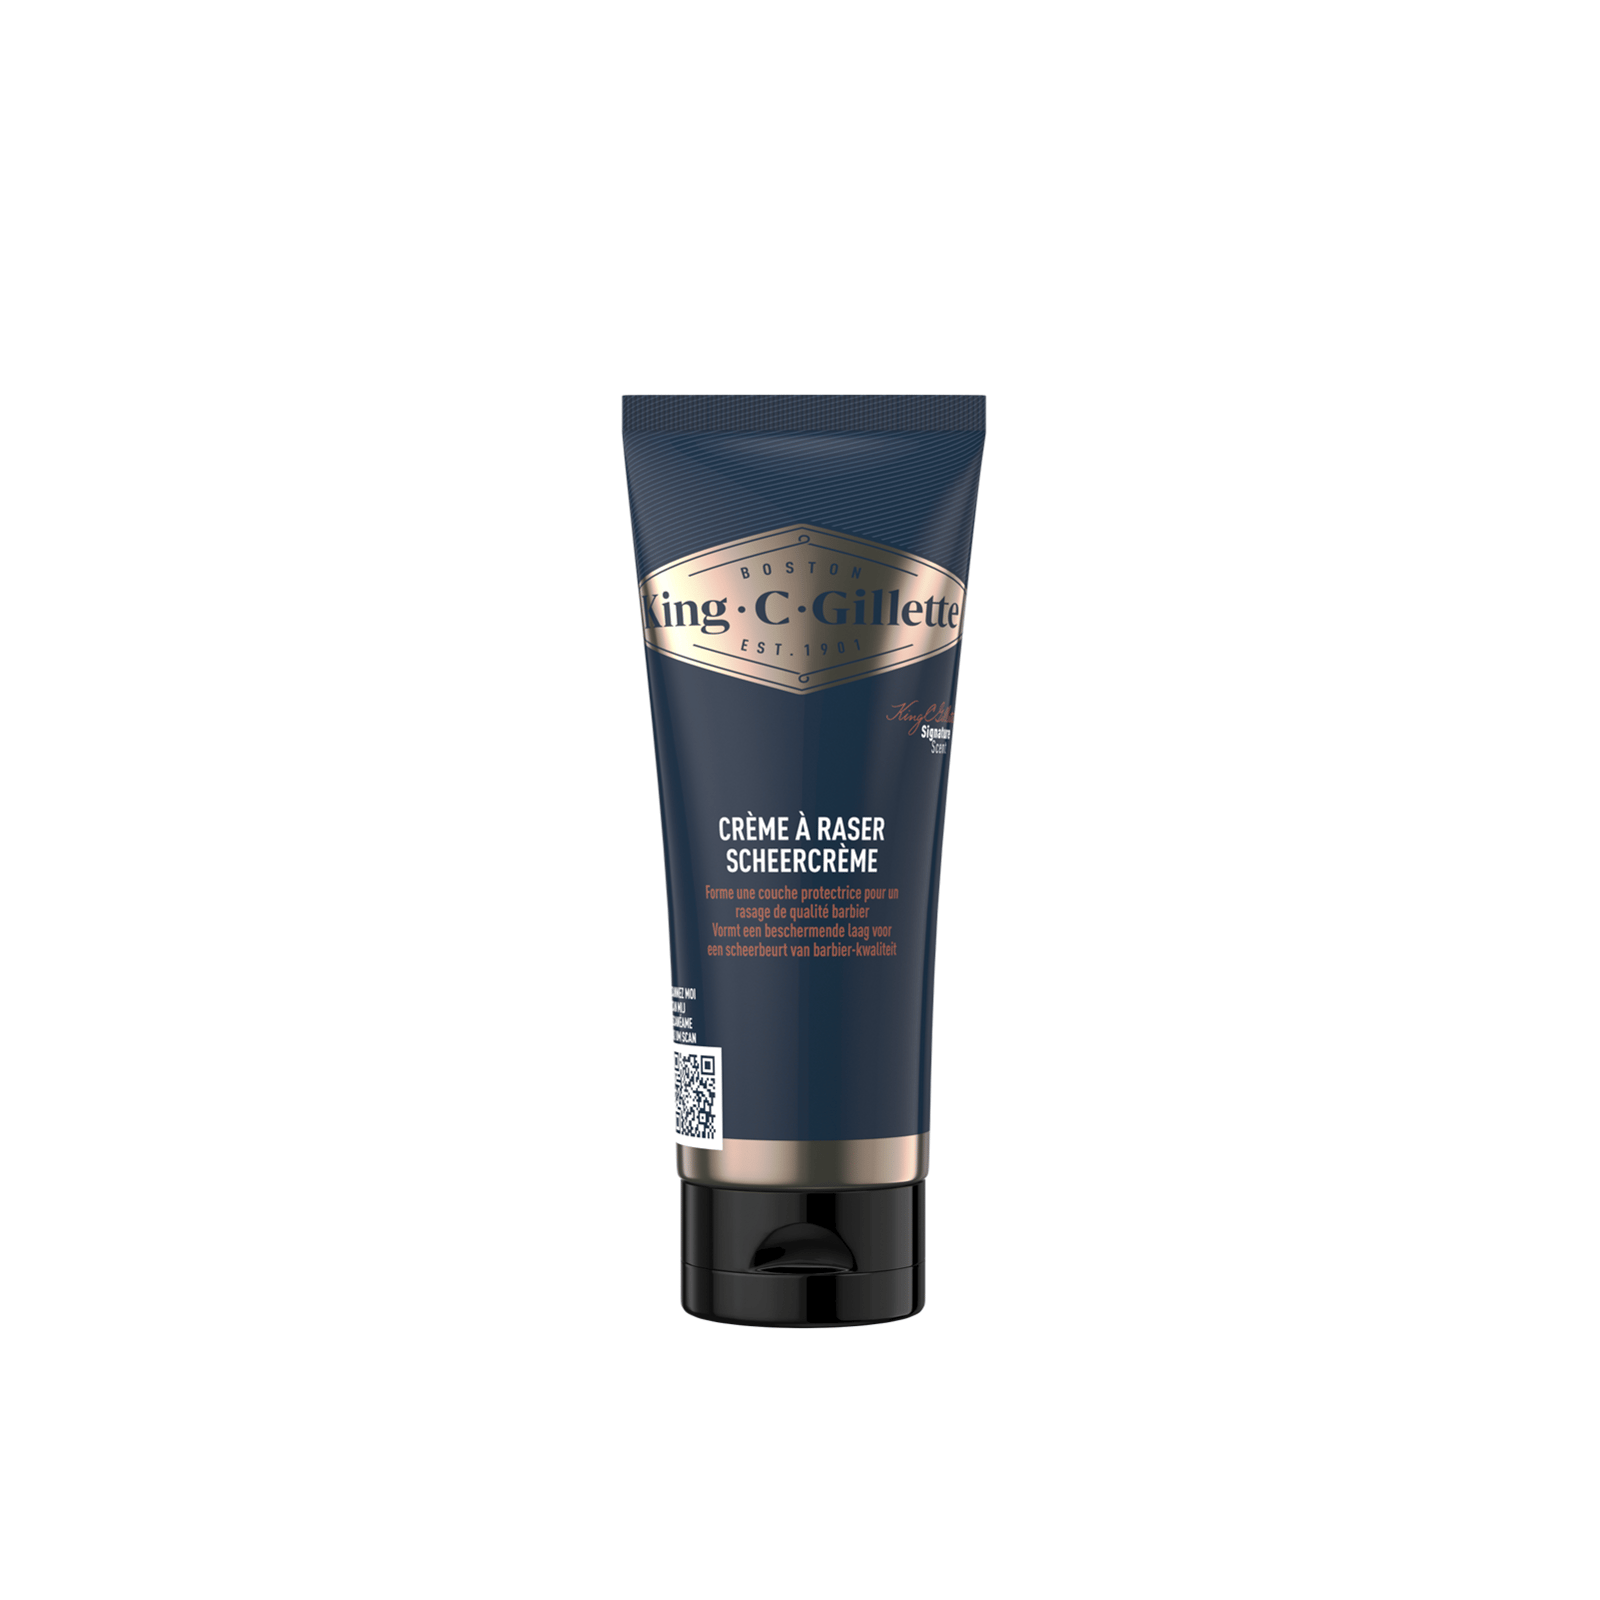 King C. Gillette Shaving Cream 175ml (5.9 fl oz)